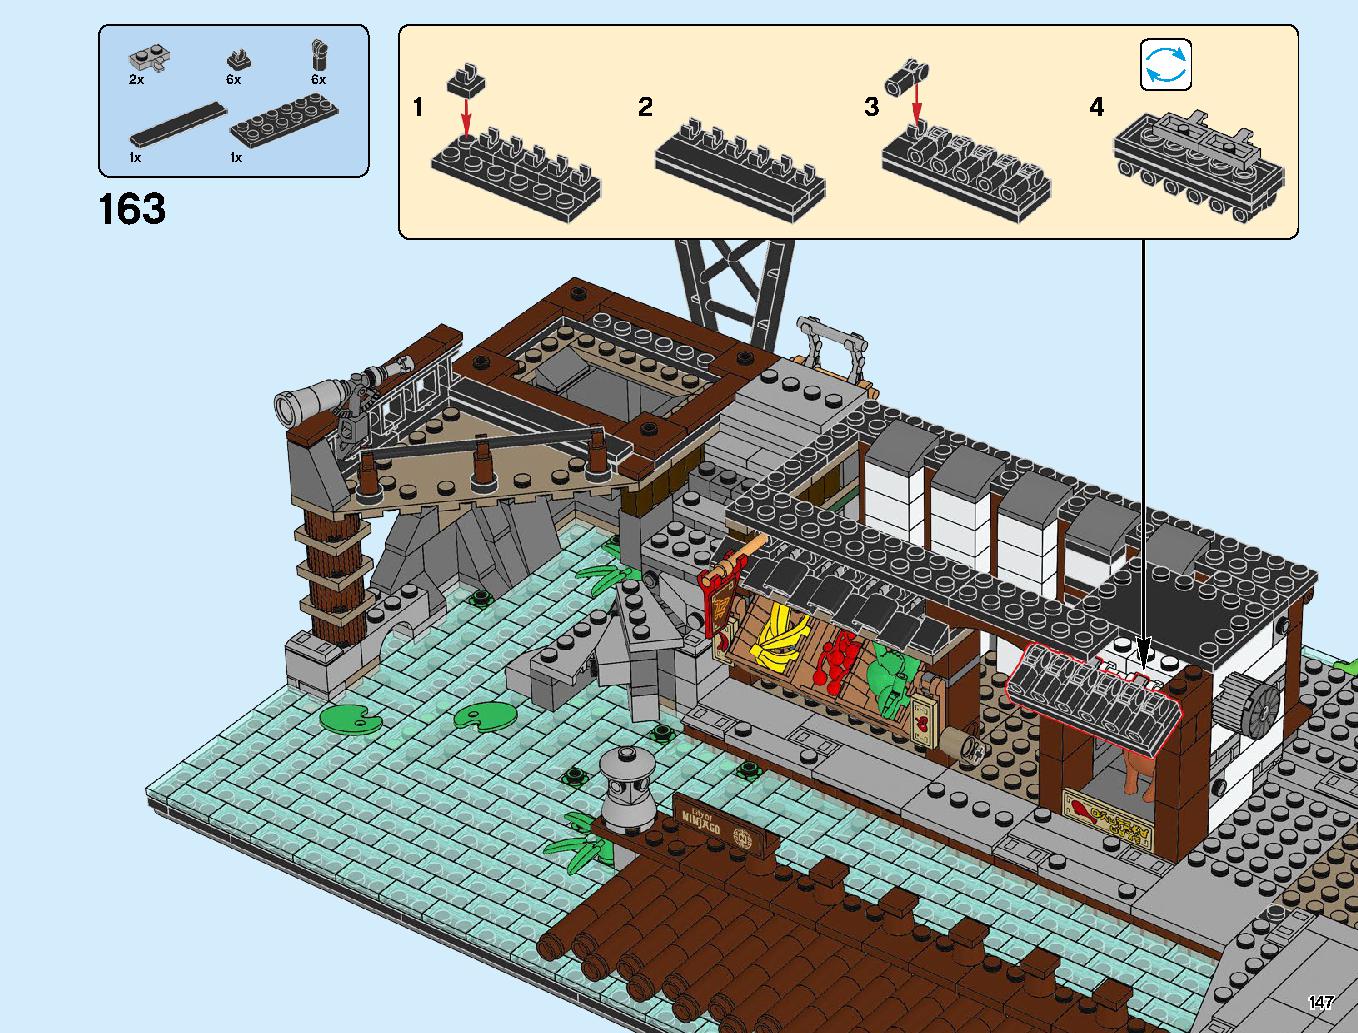 ニンジャゴーシティ・ポートパーク 70657 レゴの商品情報 レゴの説明書・組立方法 147 page